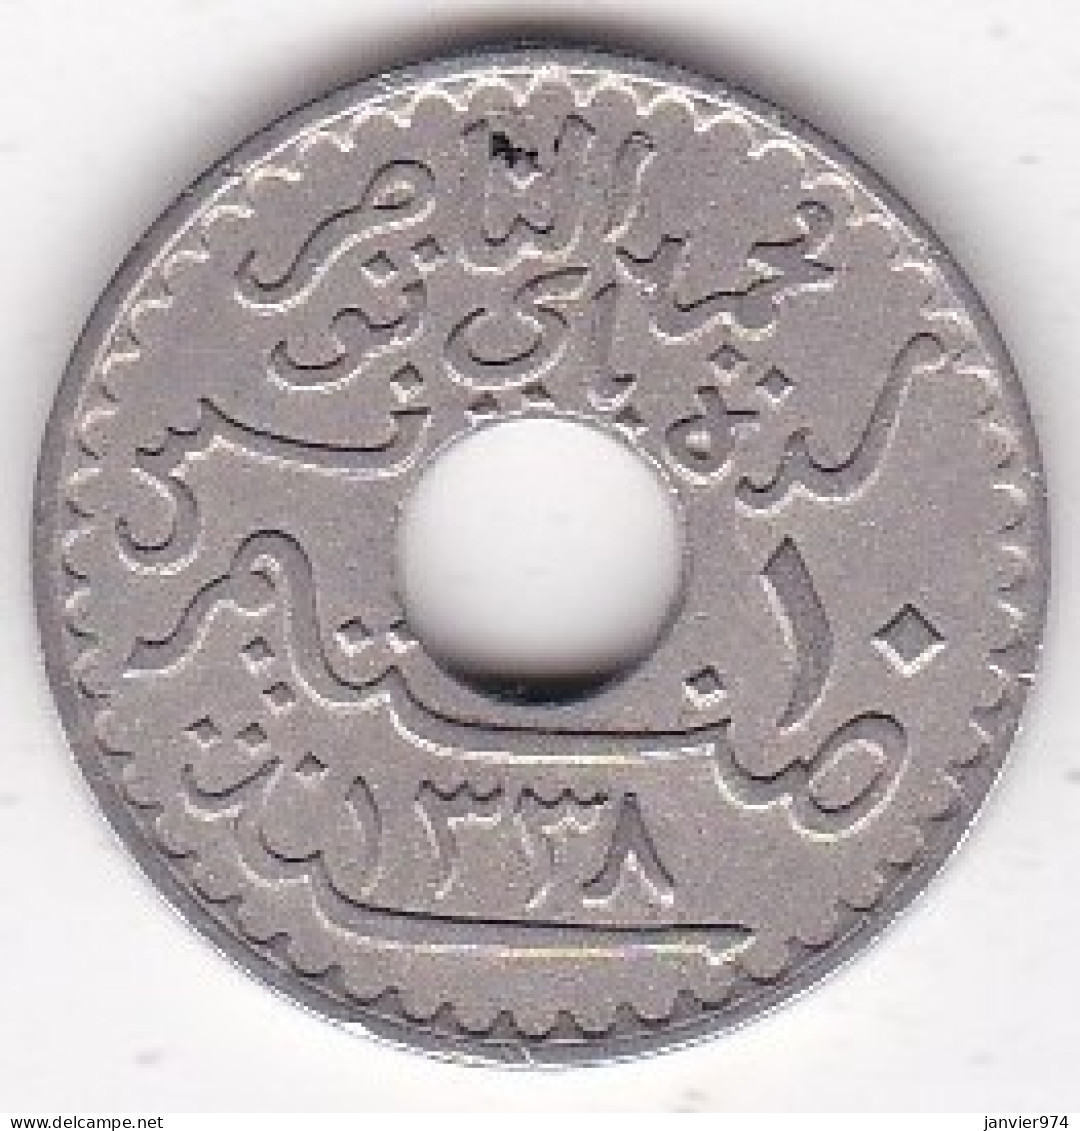 Protectorat Français 10 Centimes 1920 , Bronze Nickel, Lec# 110 - Tunisia